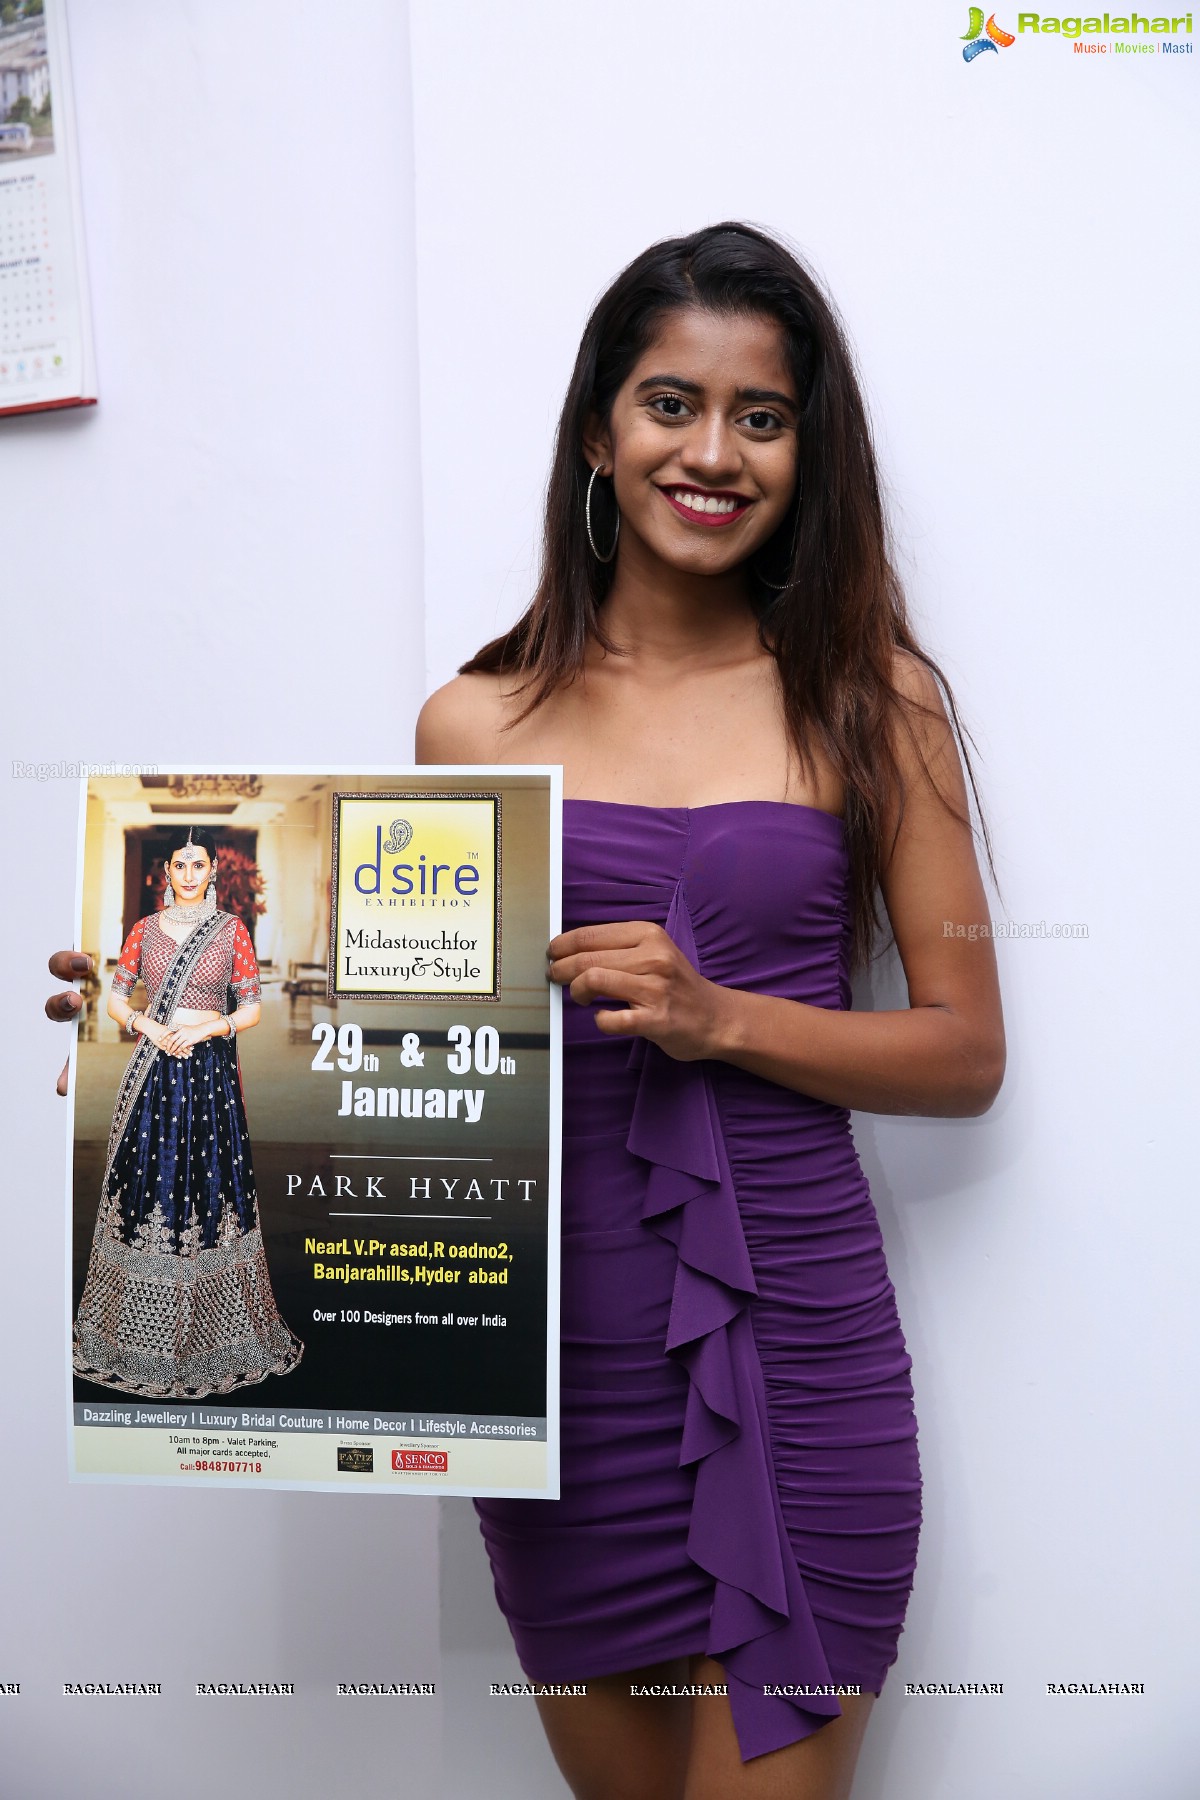 D'sire Exhibition Jan 2k19 Curtain Raiser at Marks Media Communication in Banjara Hills, Hyderabad